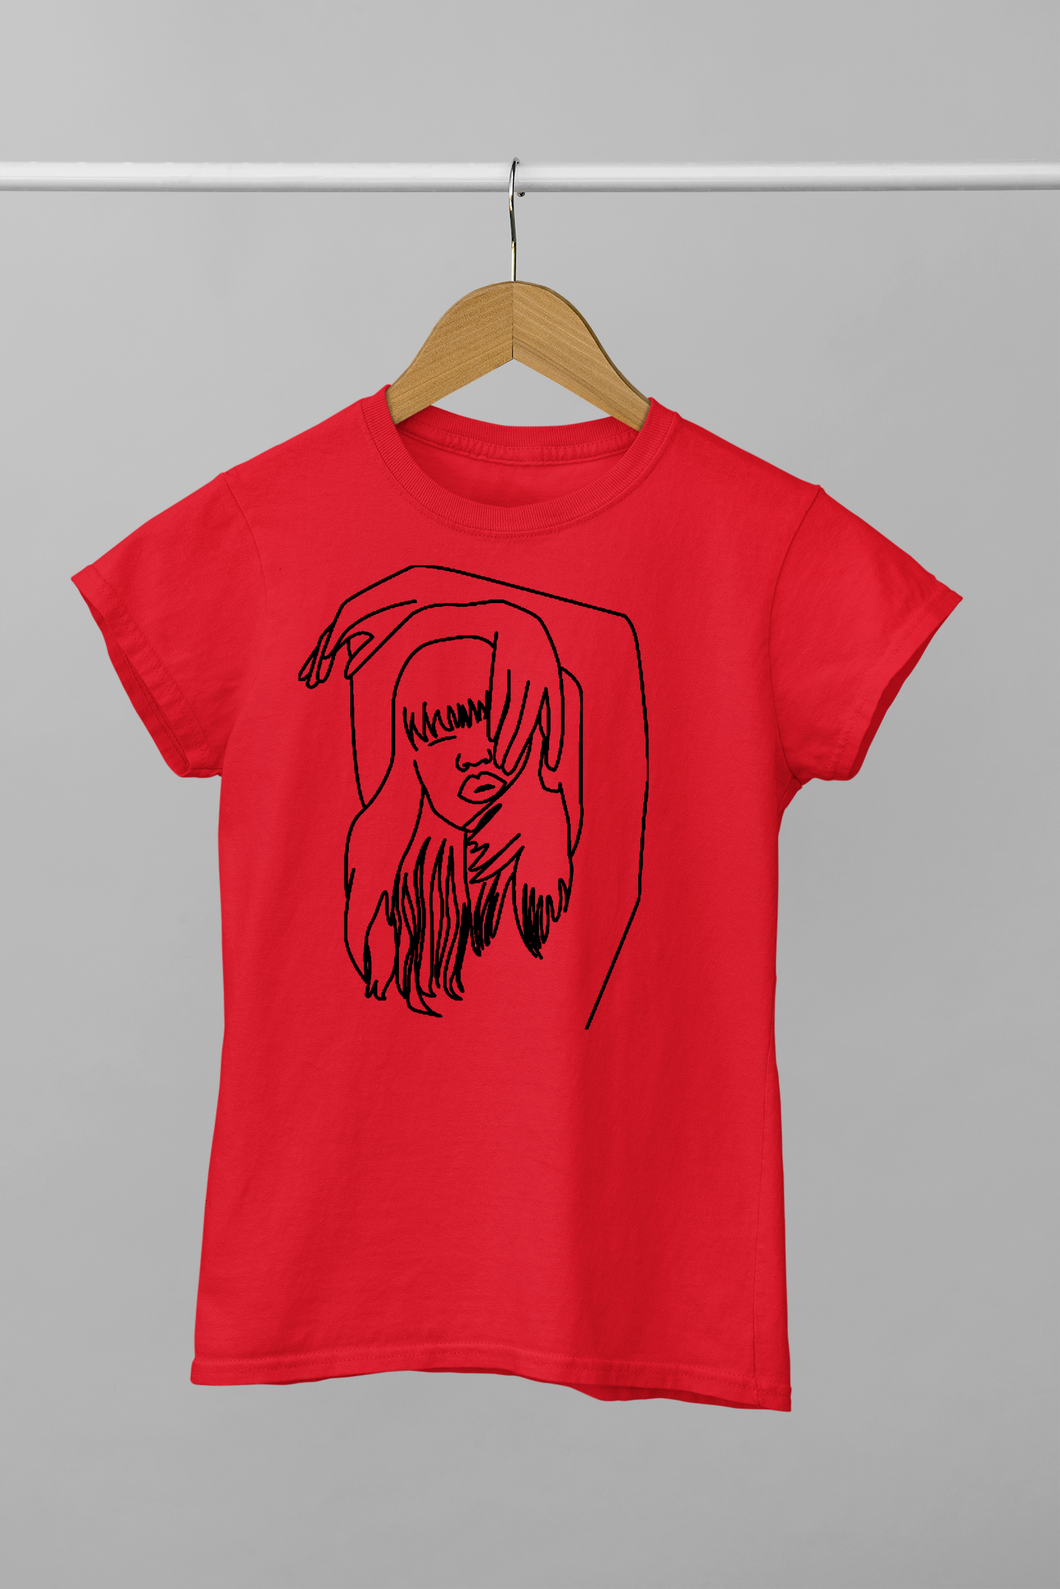 Women sketch design t-shirt